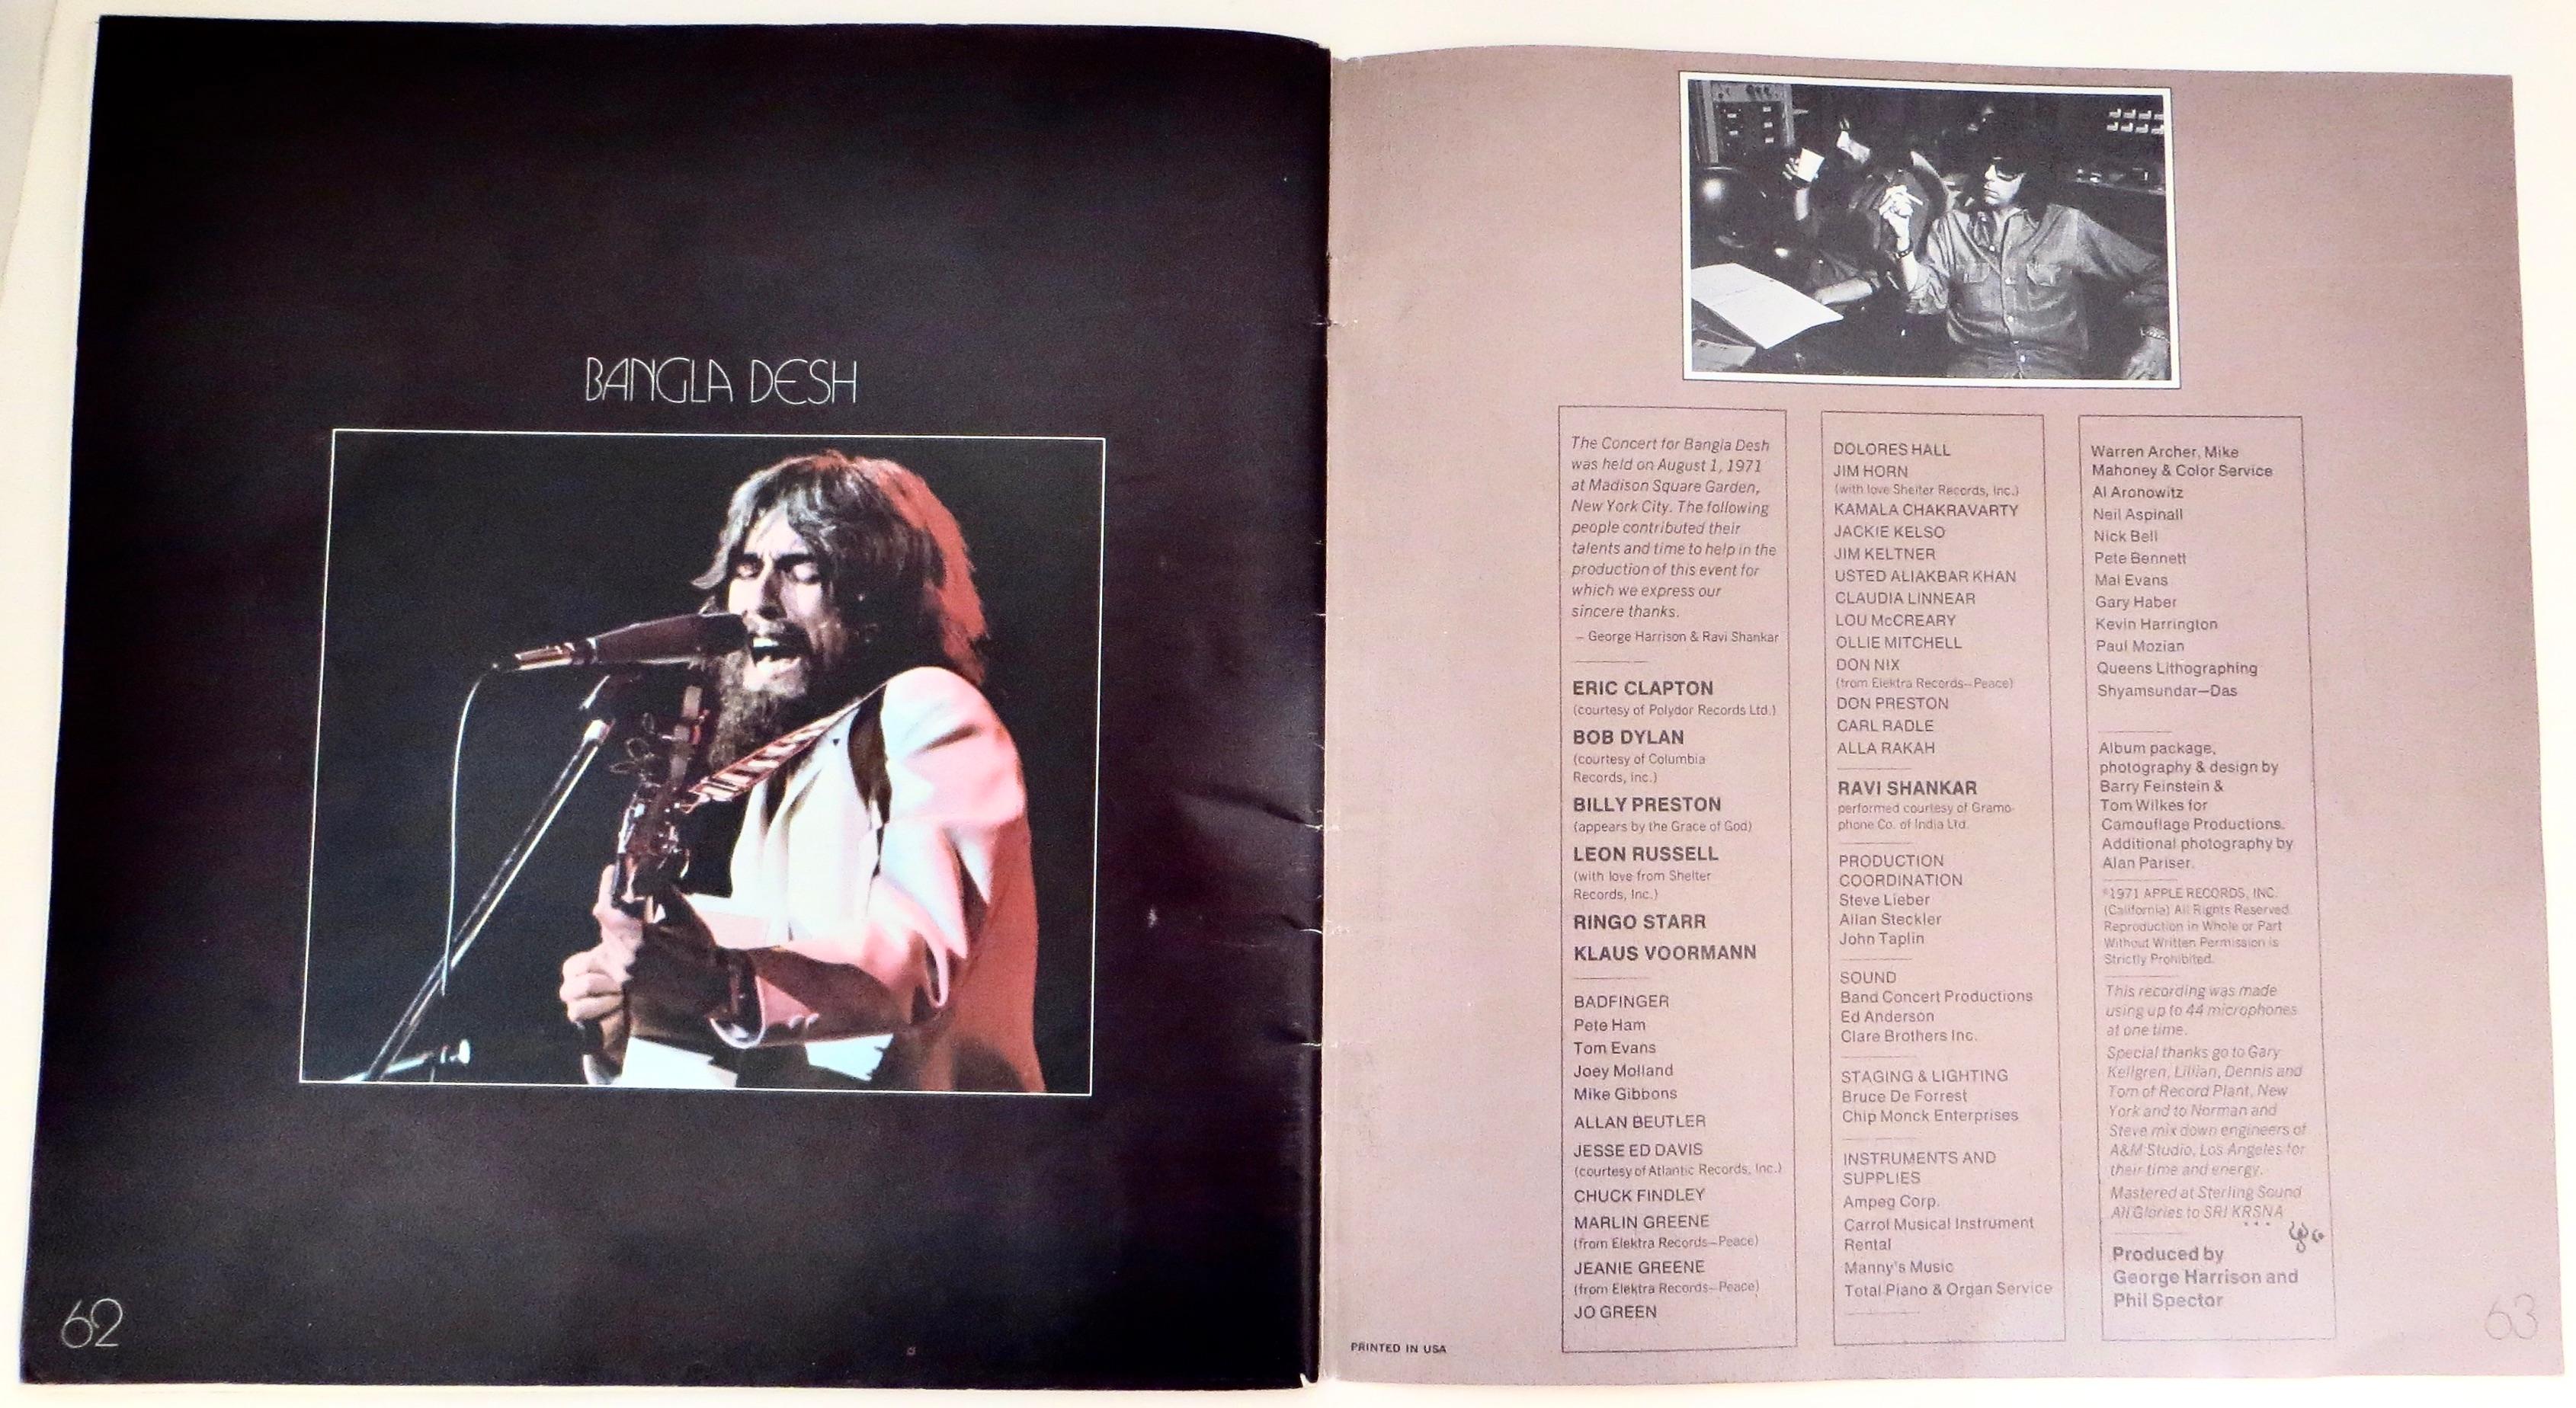 Post Konzertprogramm „The Concert For Bangladesh“ von George Harrison, 1. August 1971 im Angebot 5